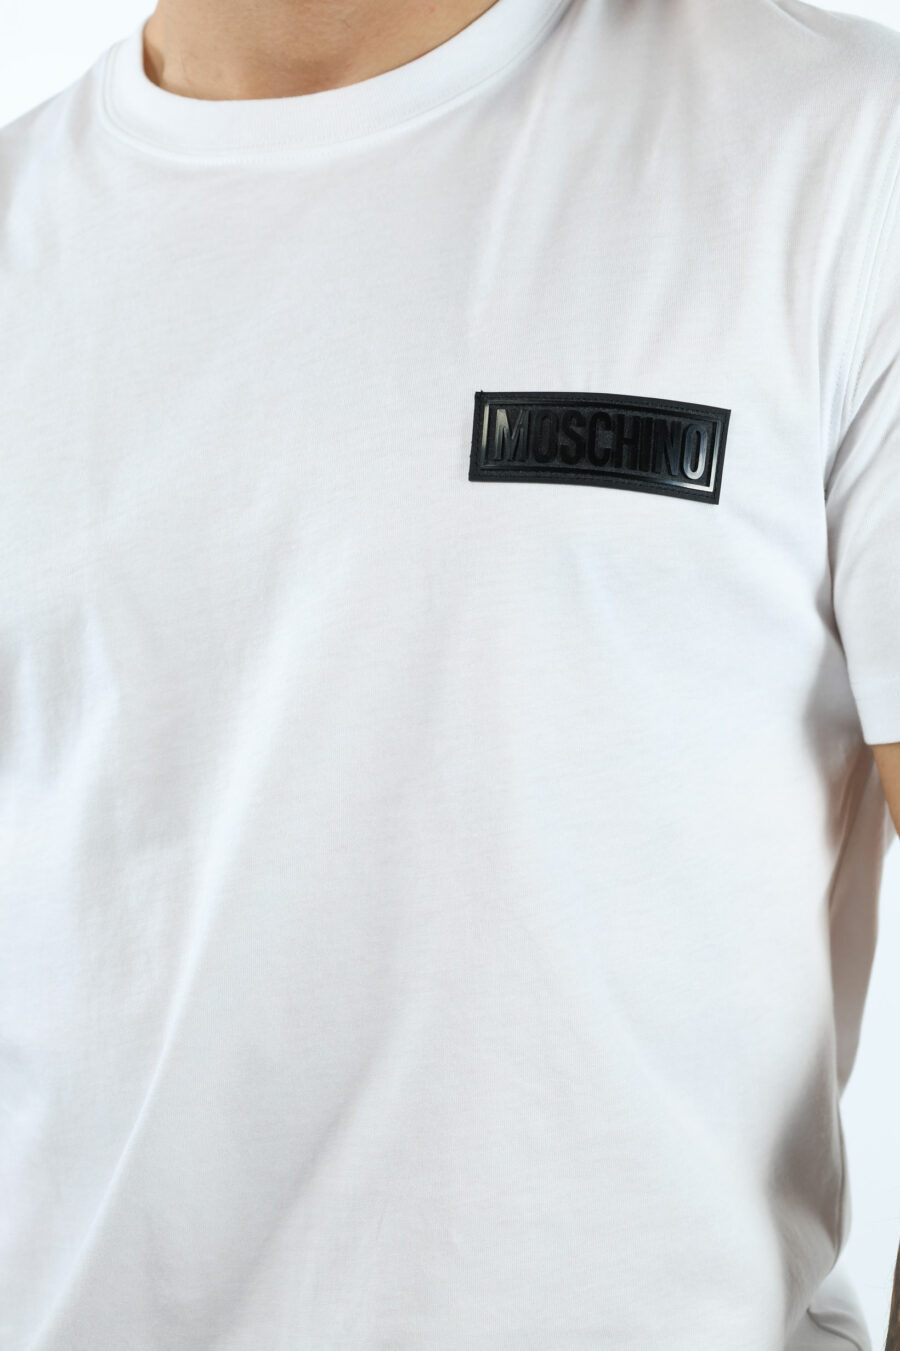 Camiseta blanca con minilogo etiqueta negro - 106759